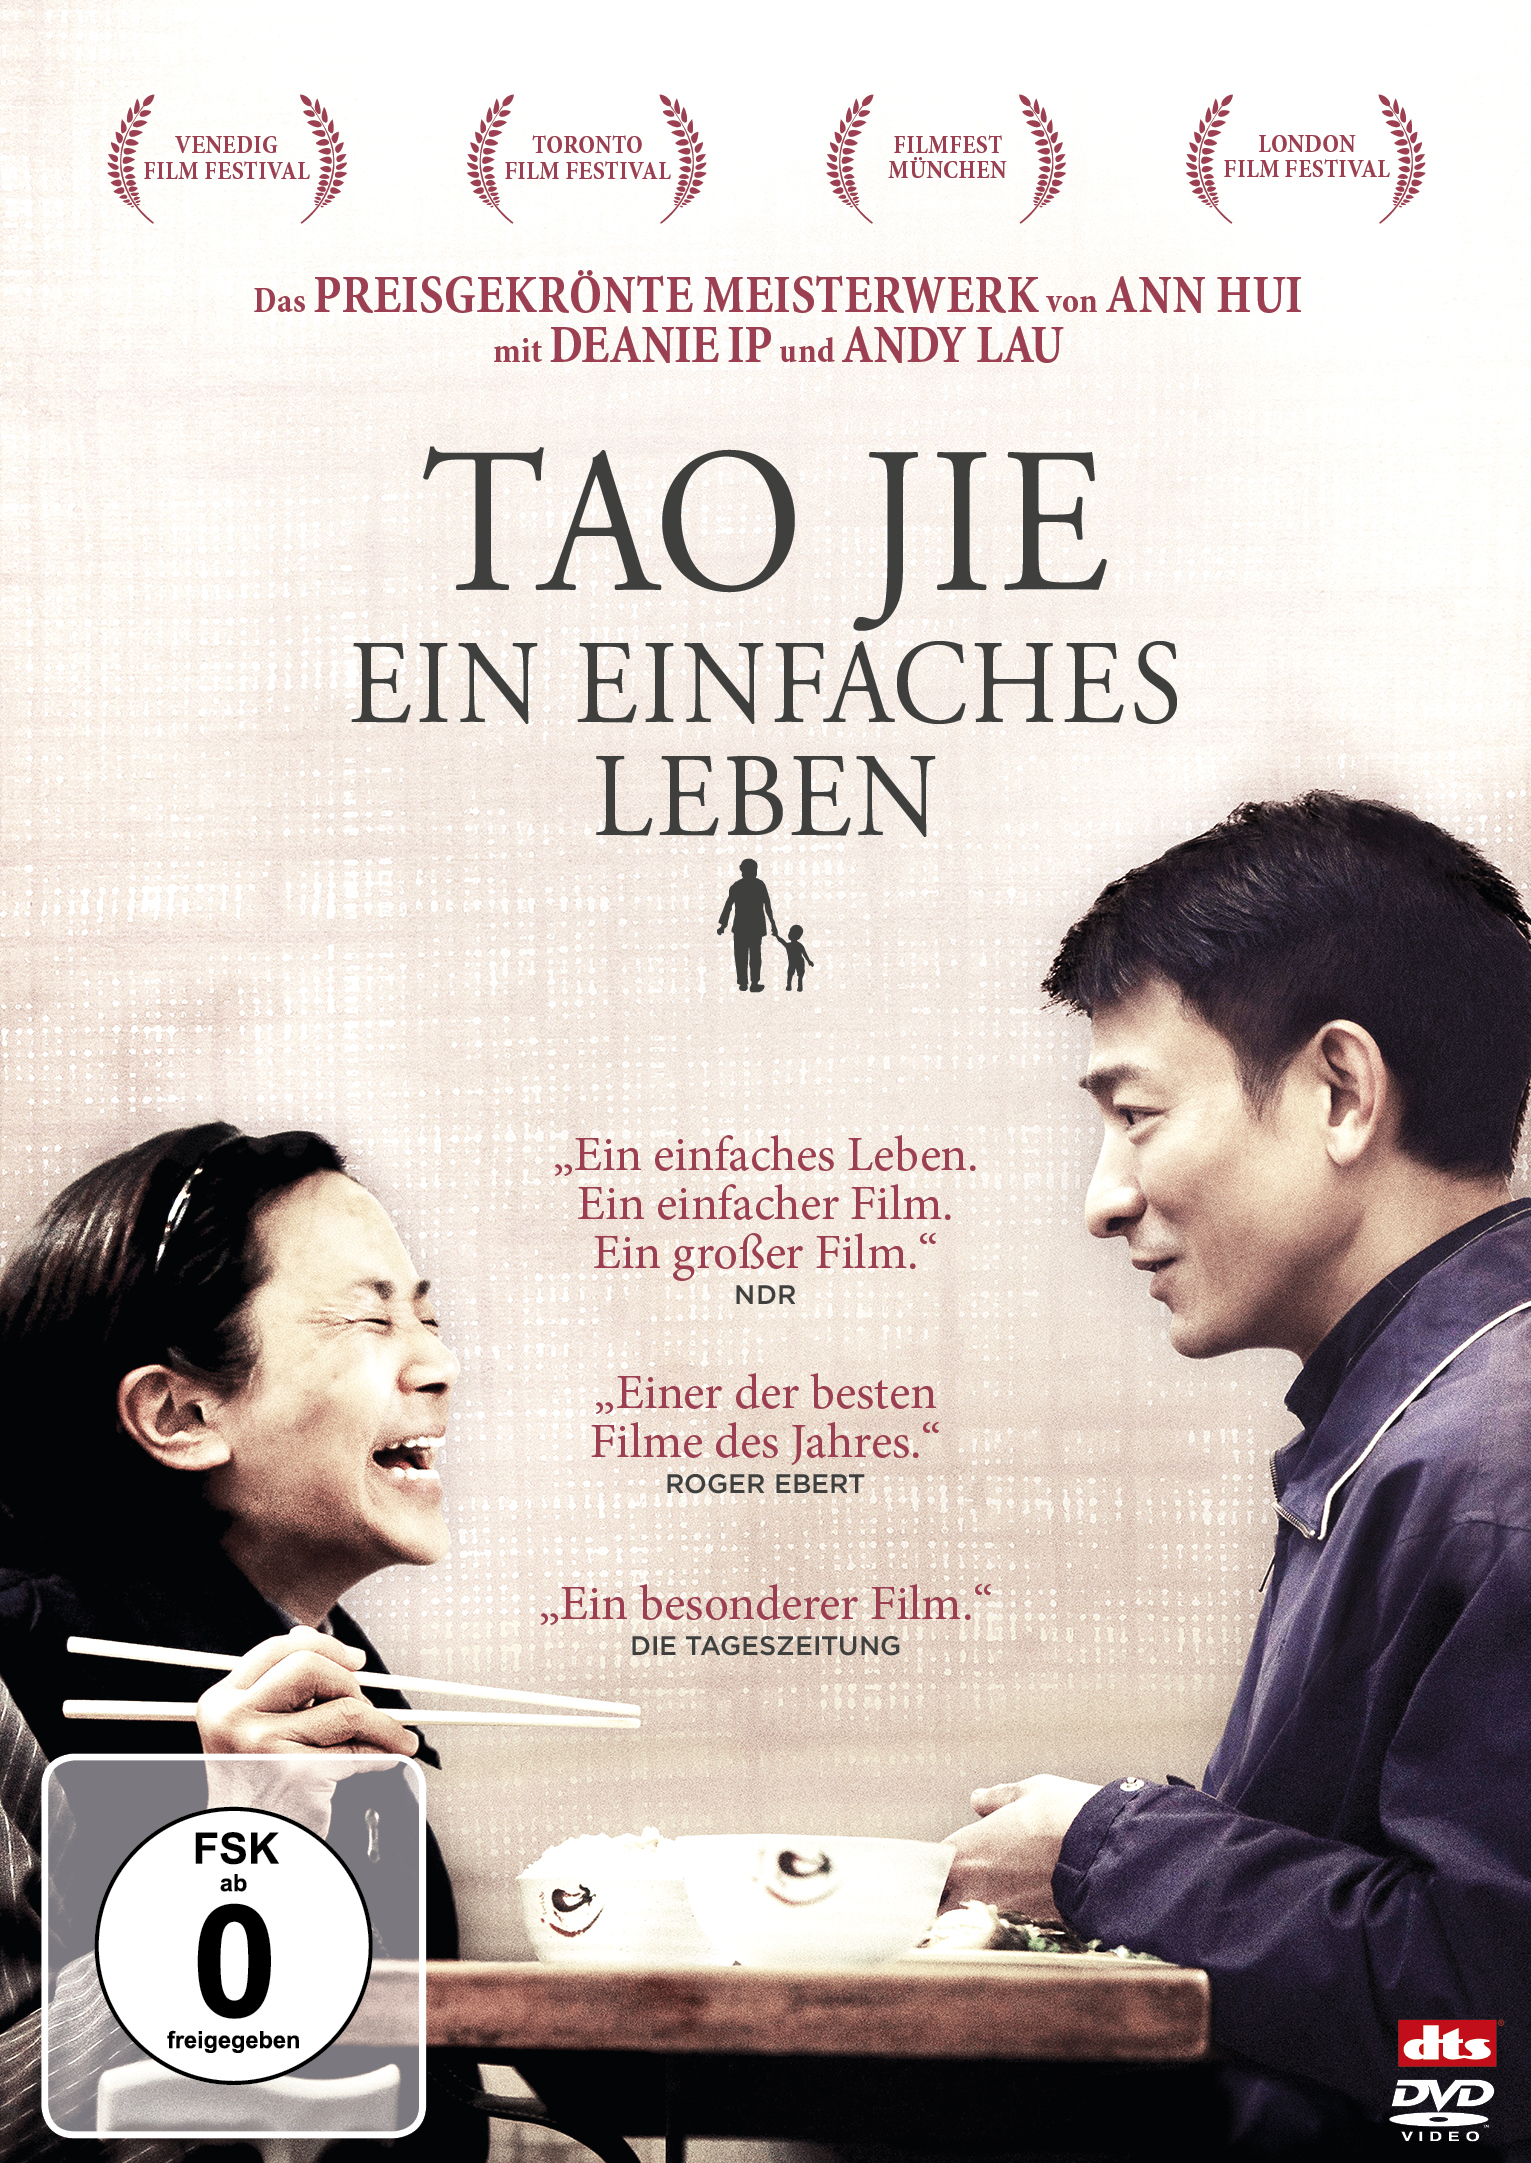 Tao Jie - Ein einfaches DVD Leben